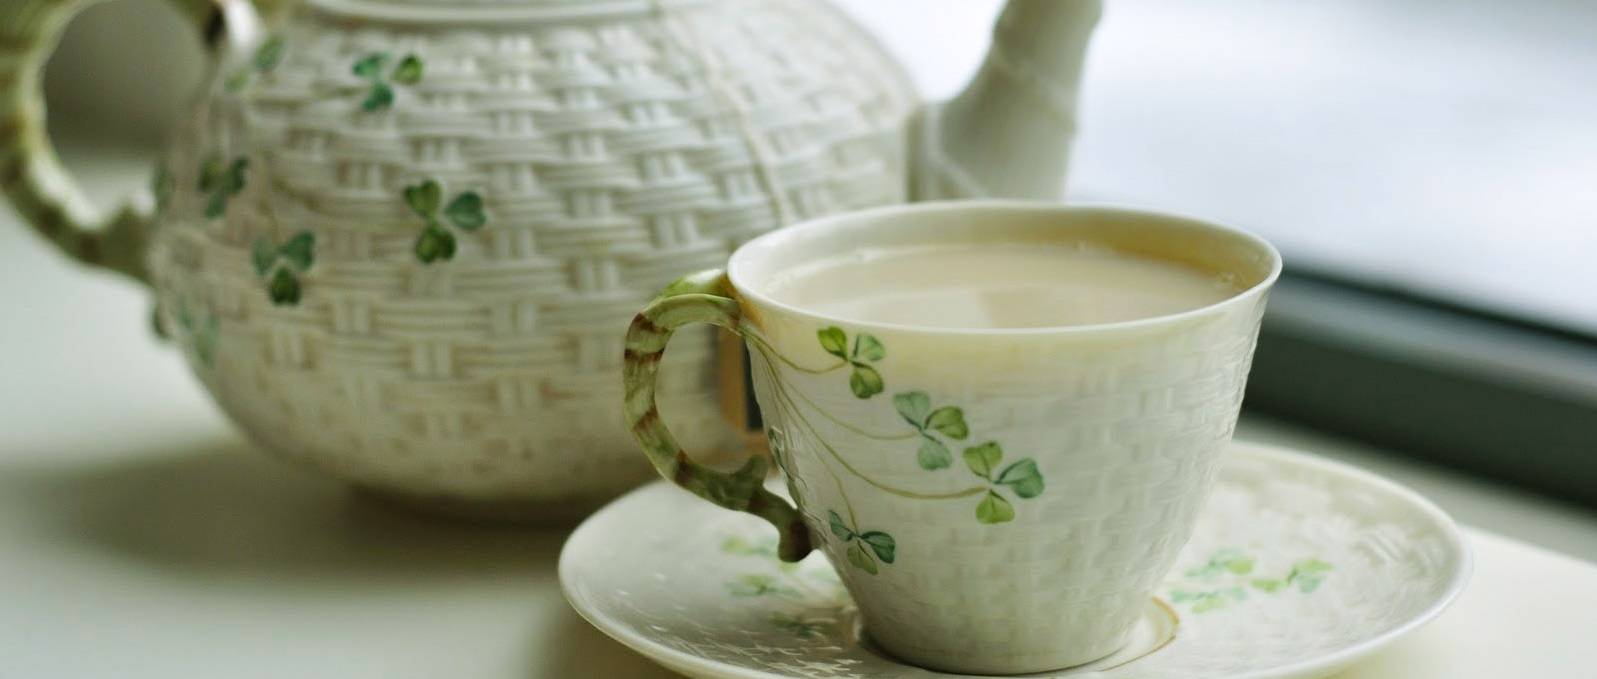 Как правильно заварить зеленый чай с молоком для похудения? | похудение тут